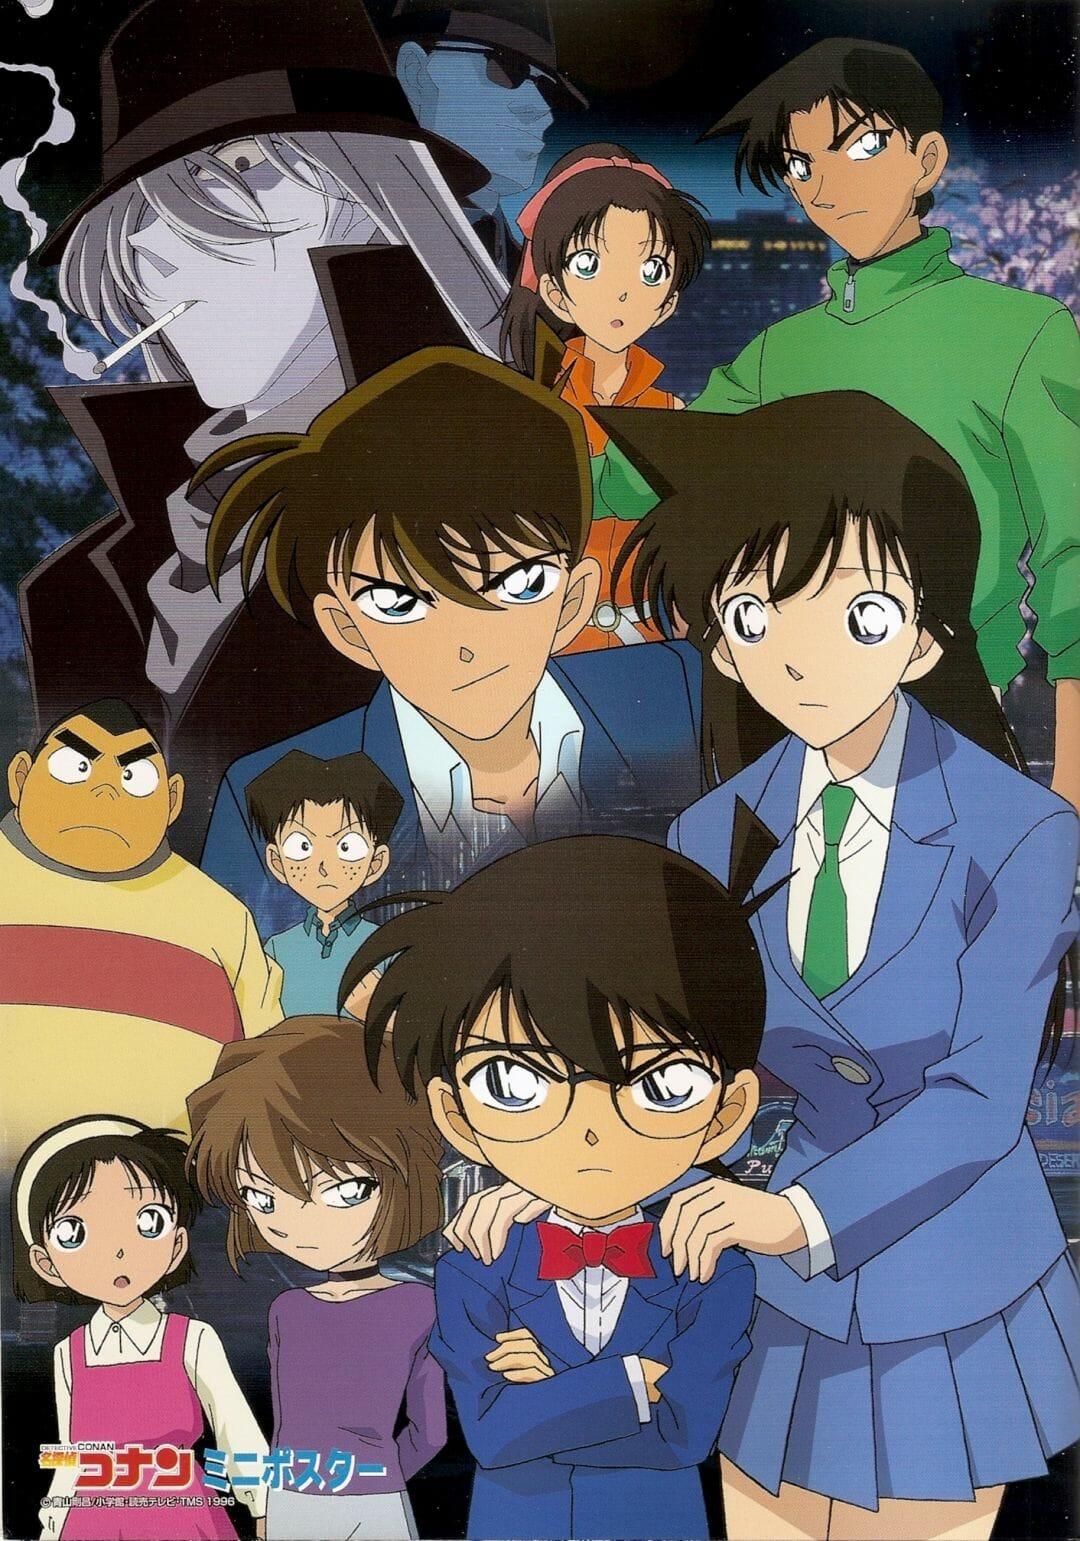 Anime Detective Conan Wallpapers - Top Free Anime Detective Conan ...